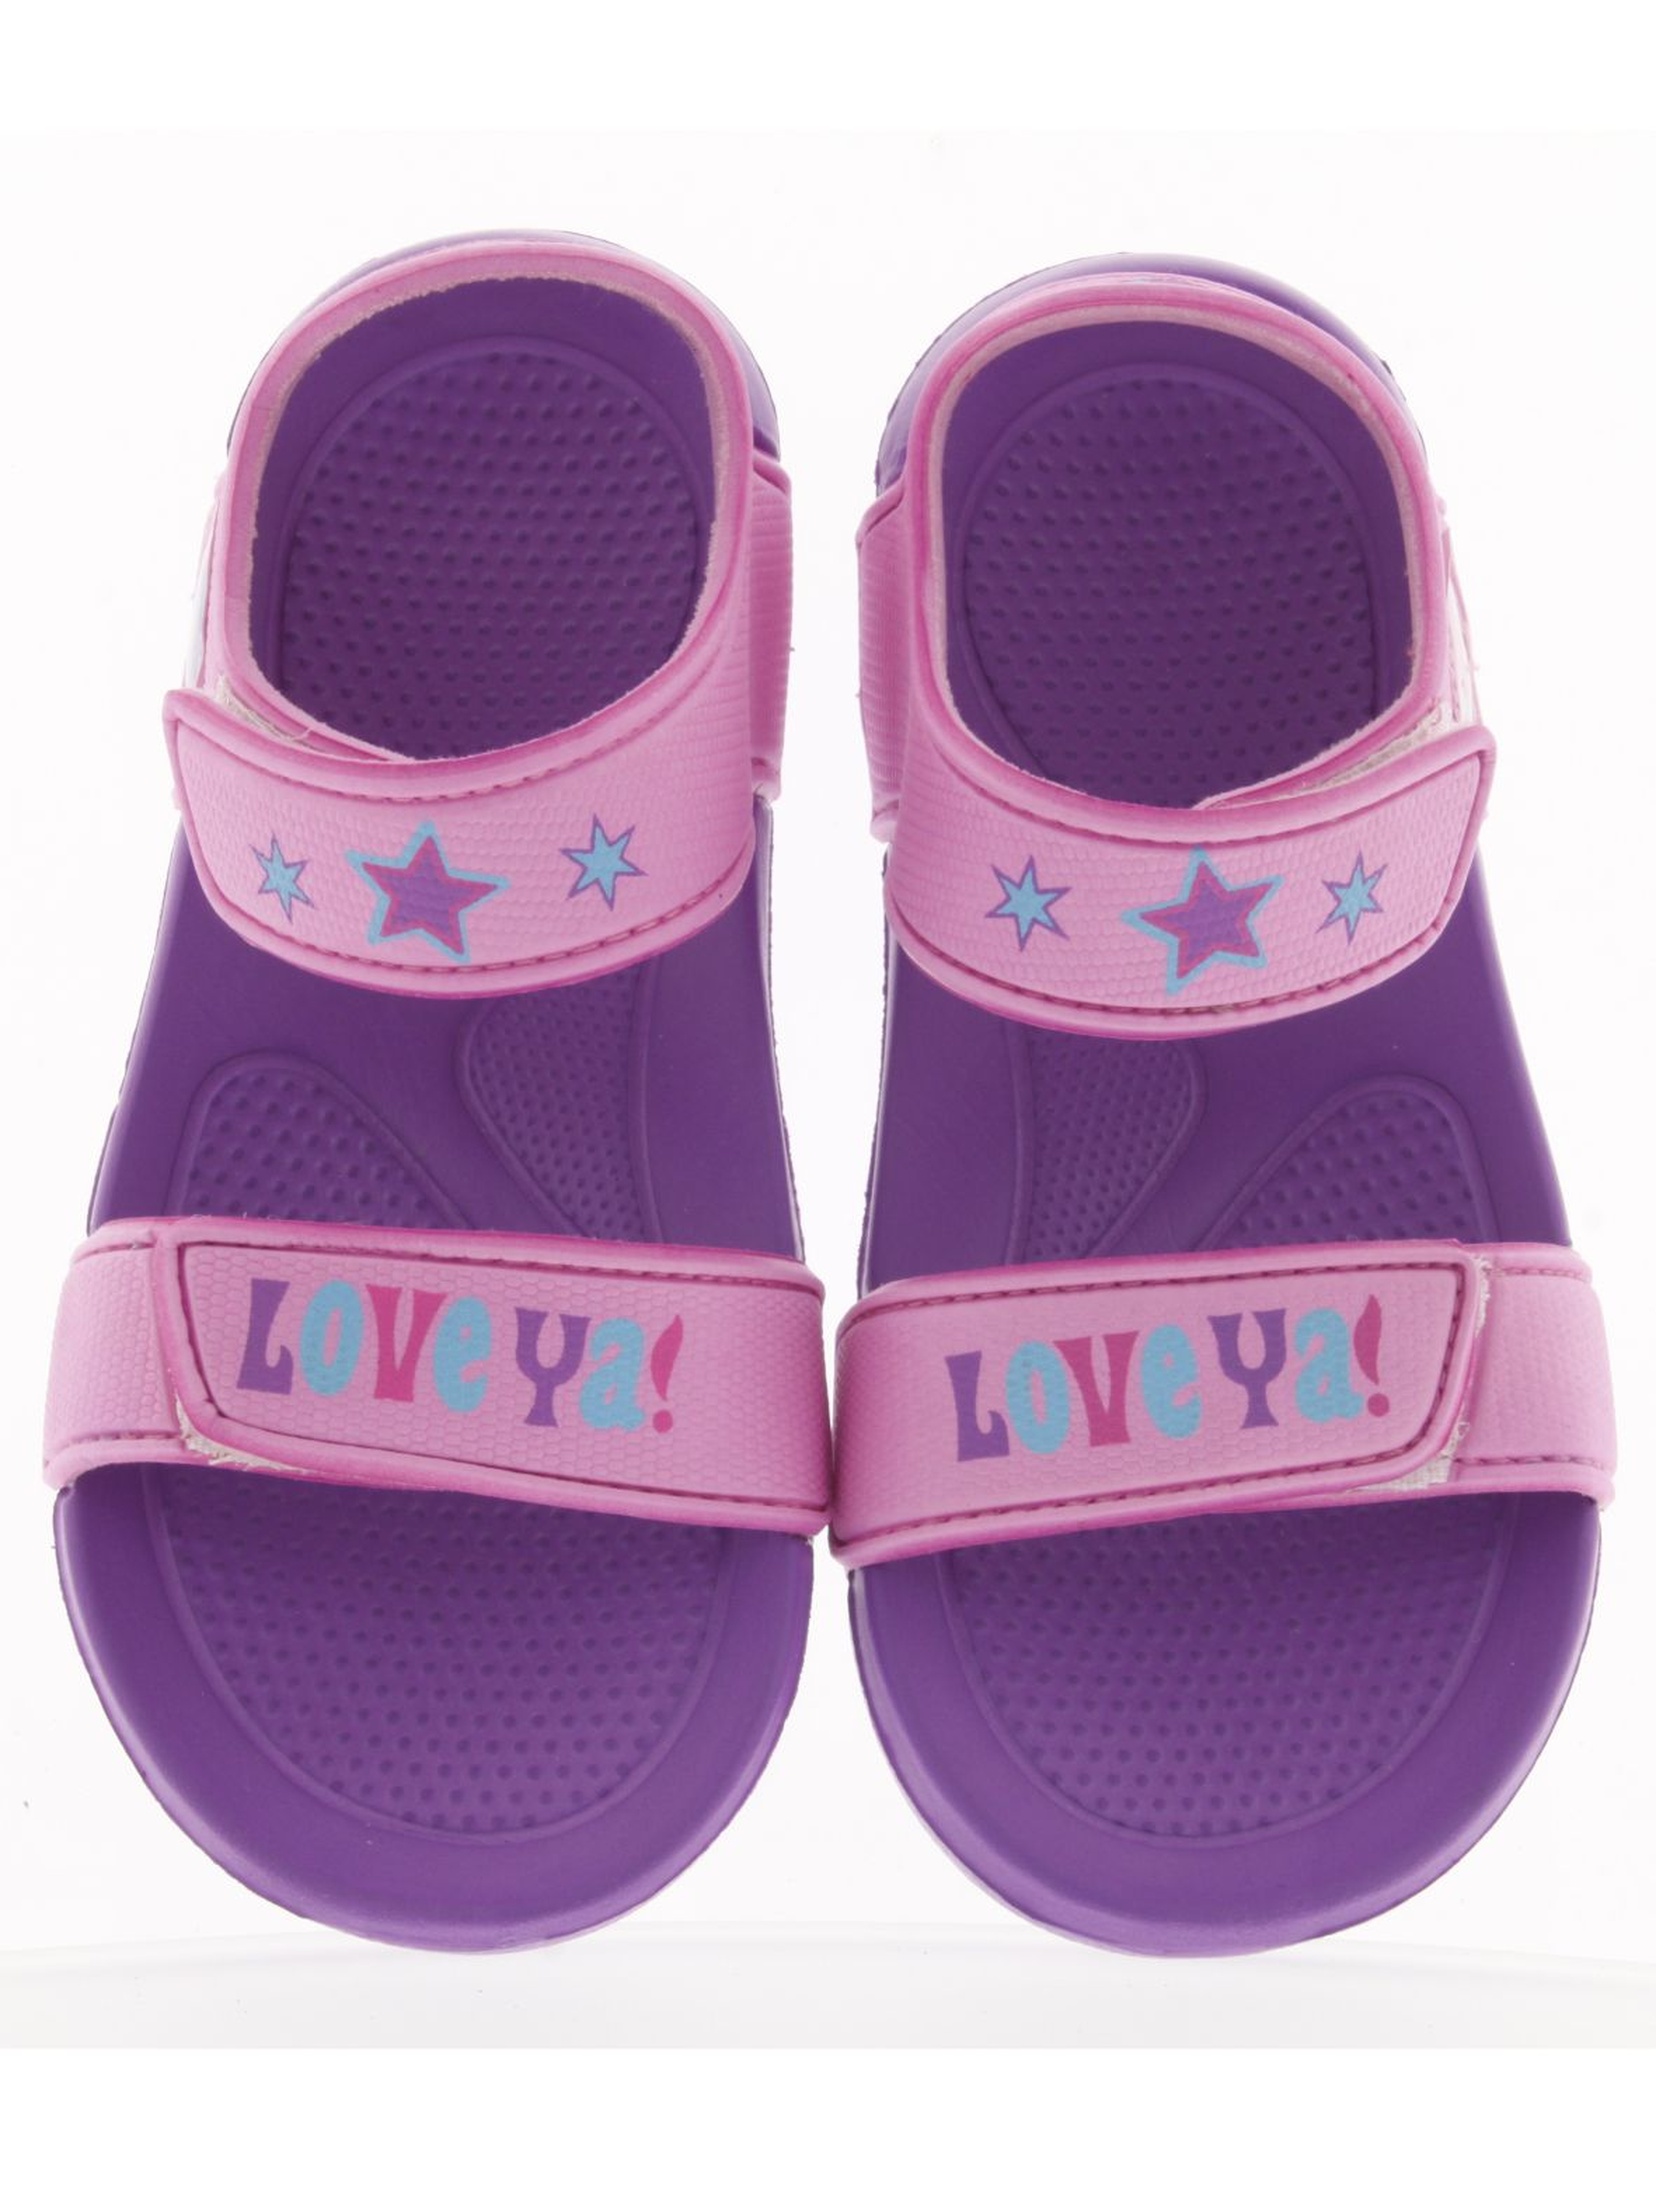 Fioletowe sandały dla dziewczynki